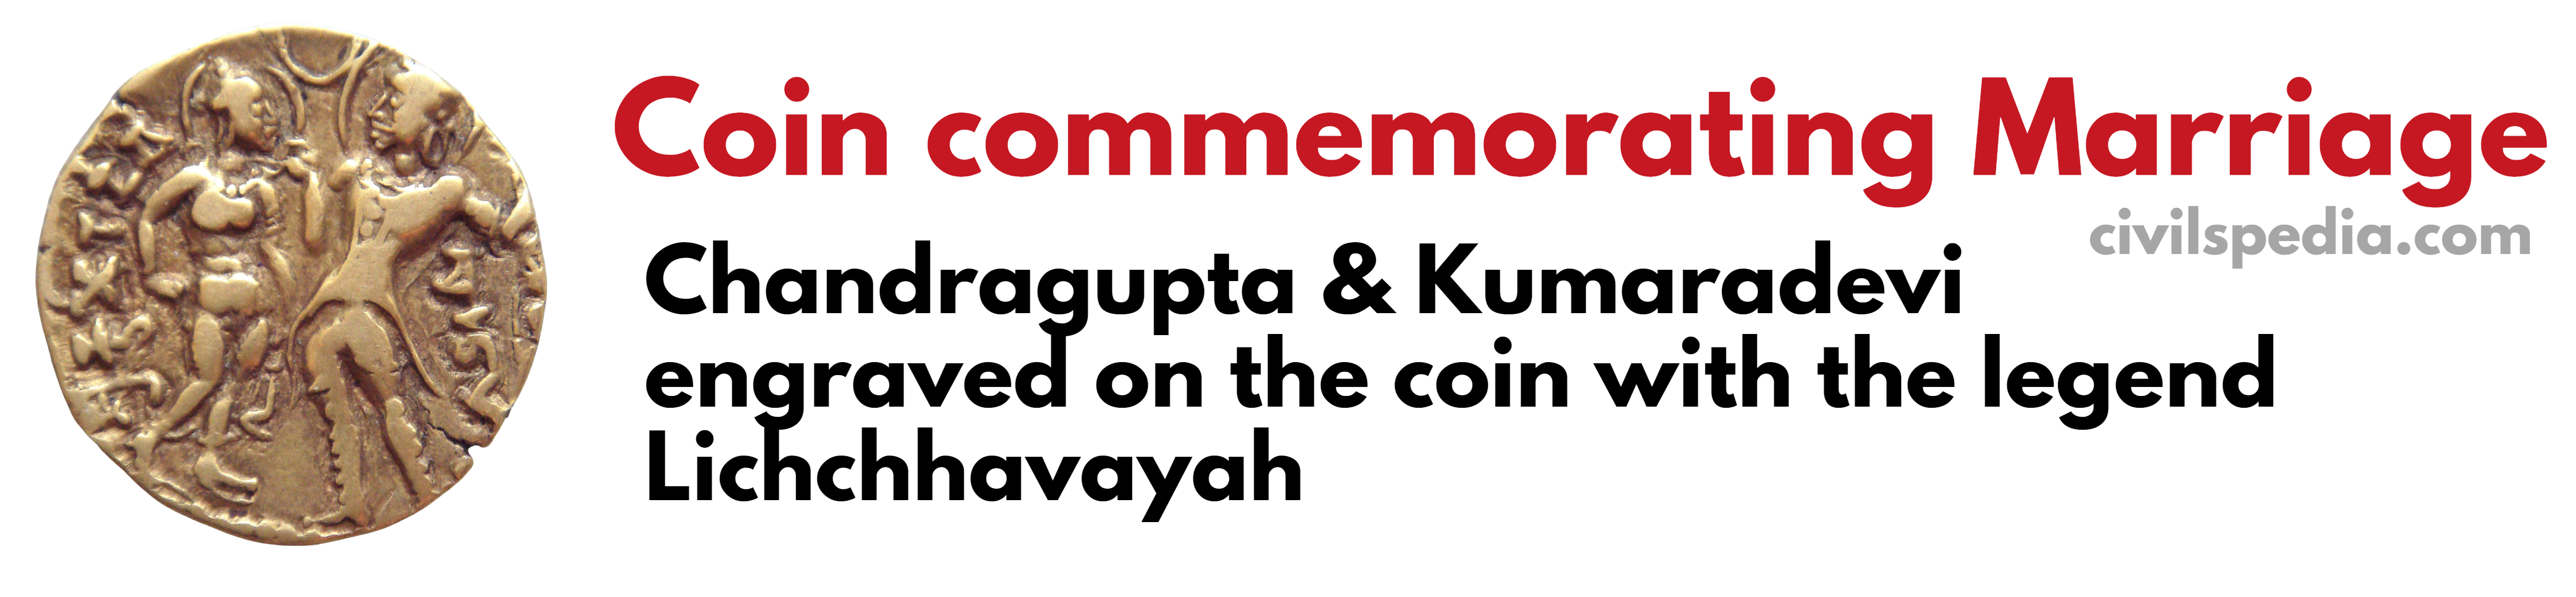 Chandragupta I coins 